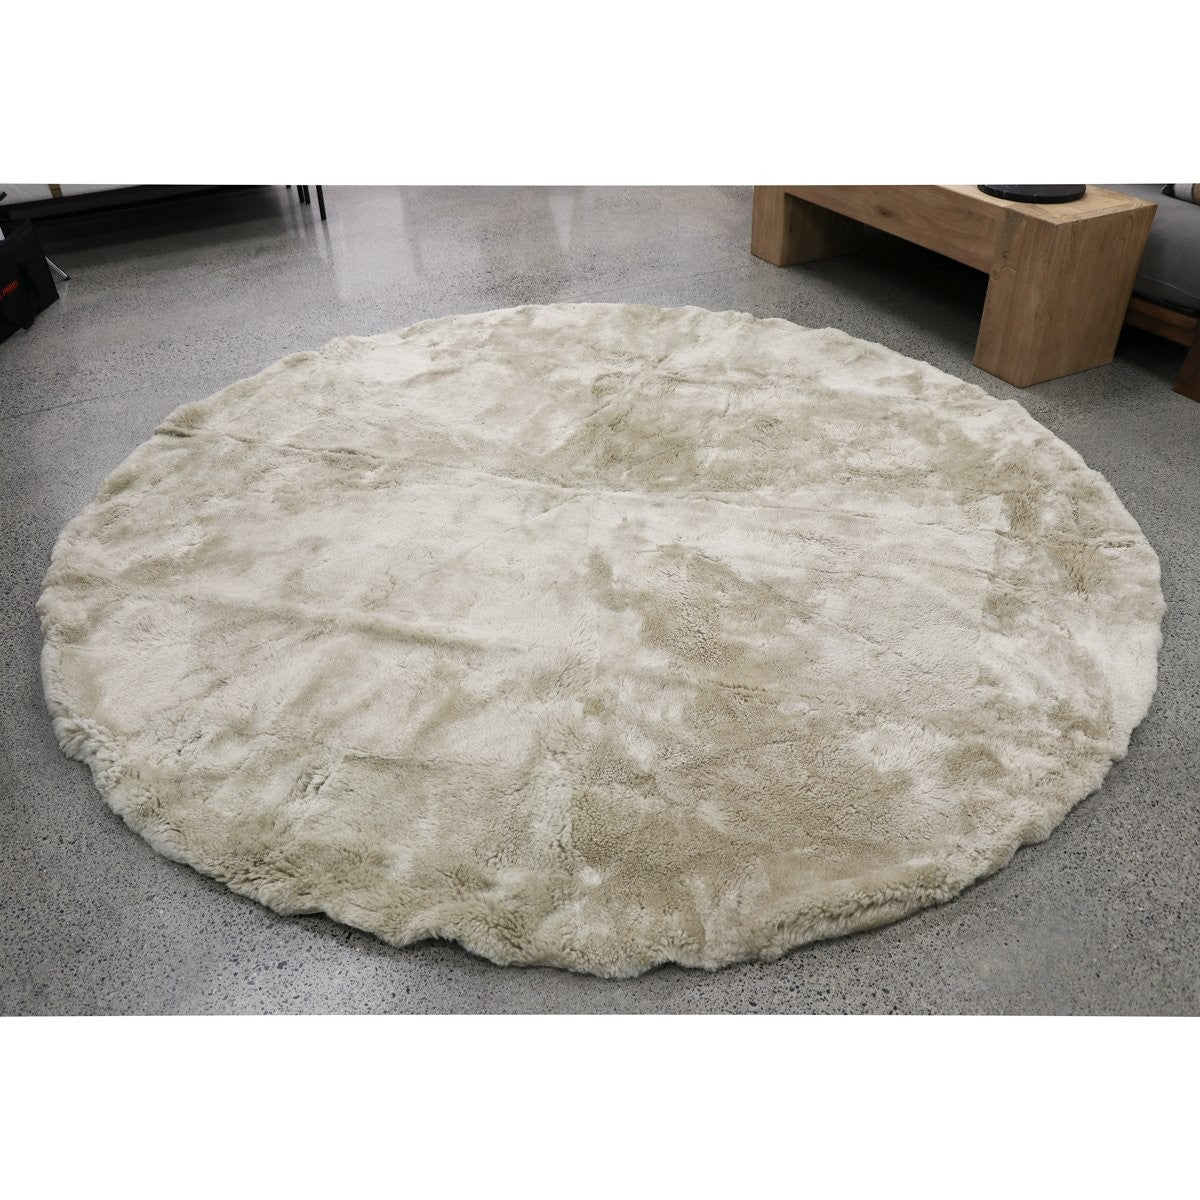 NZ Sheepskin Round Floor Rug - Natural - 120cm